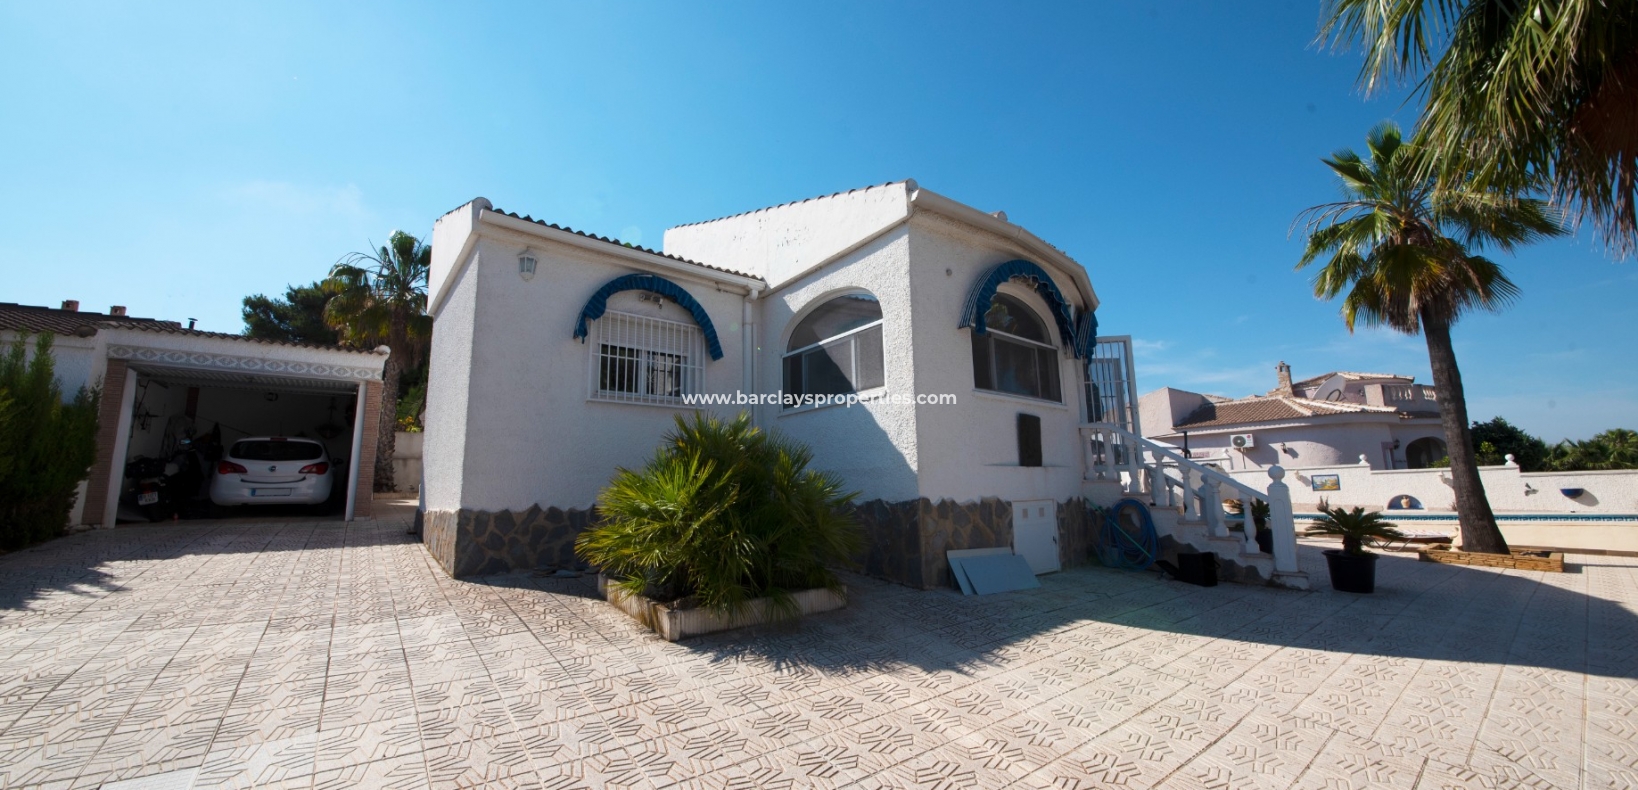 Huis - Prestige Villa te koop in urbanisatie La Escuera, Alicante